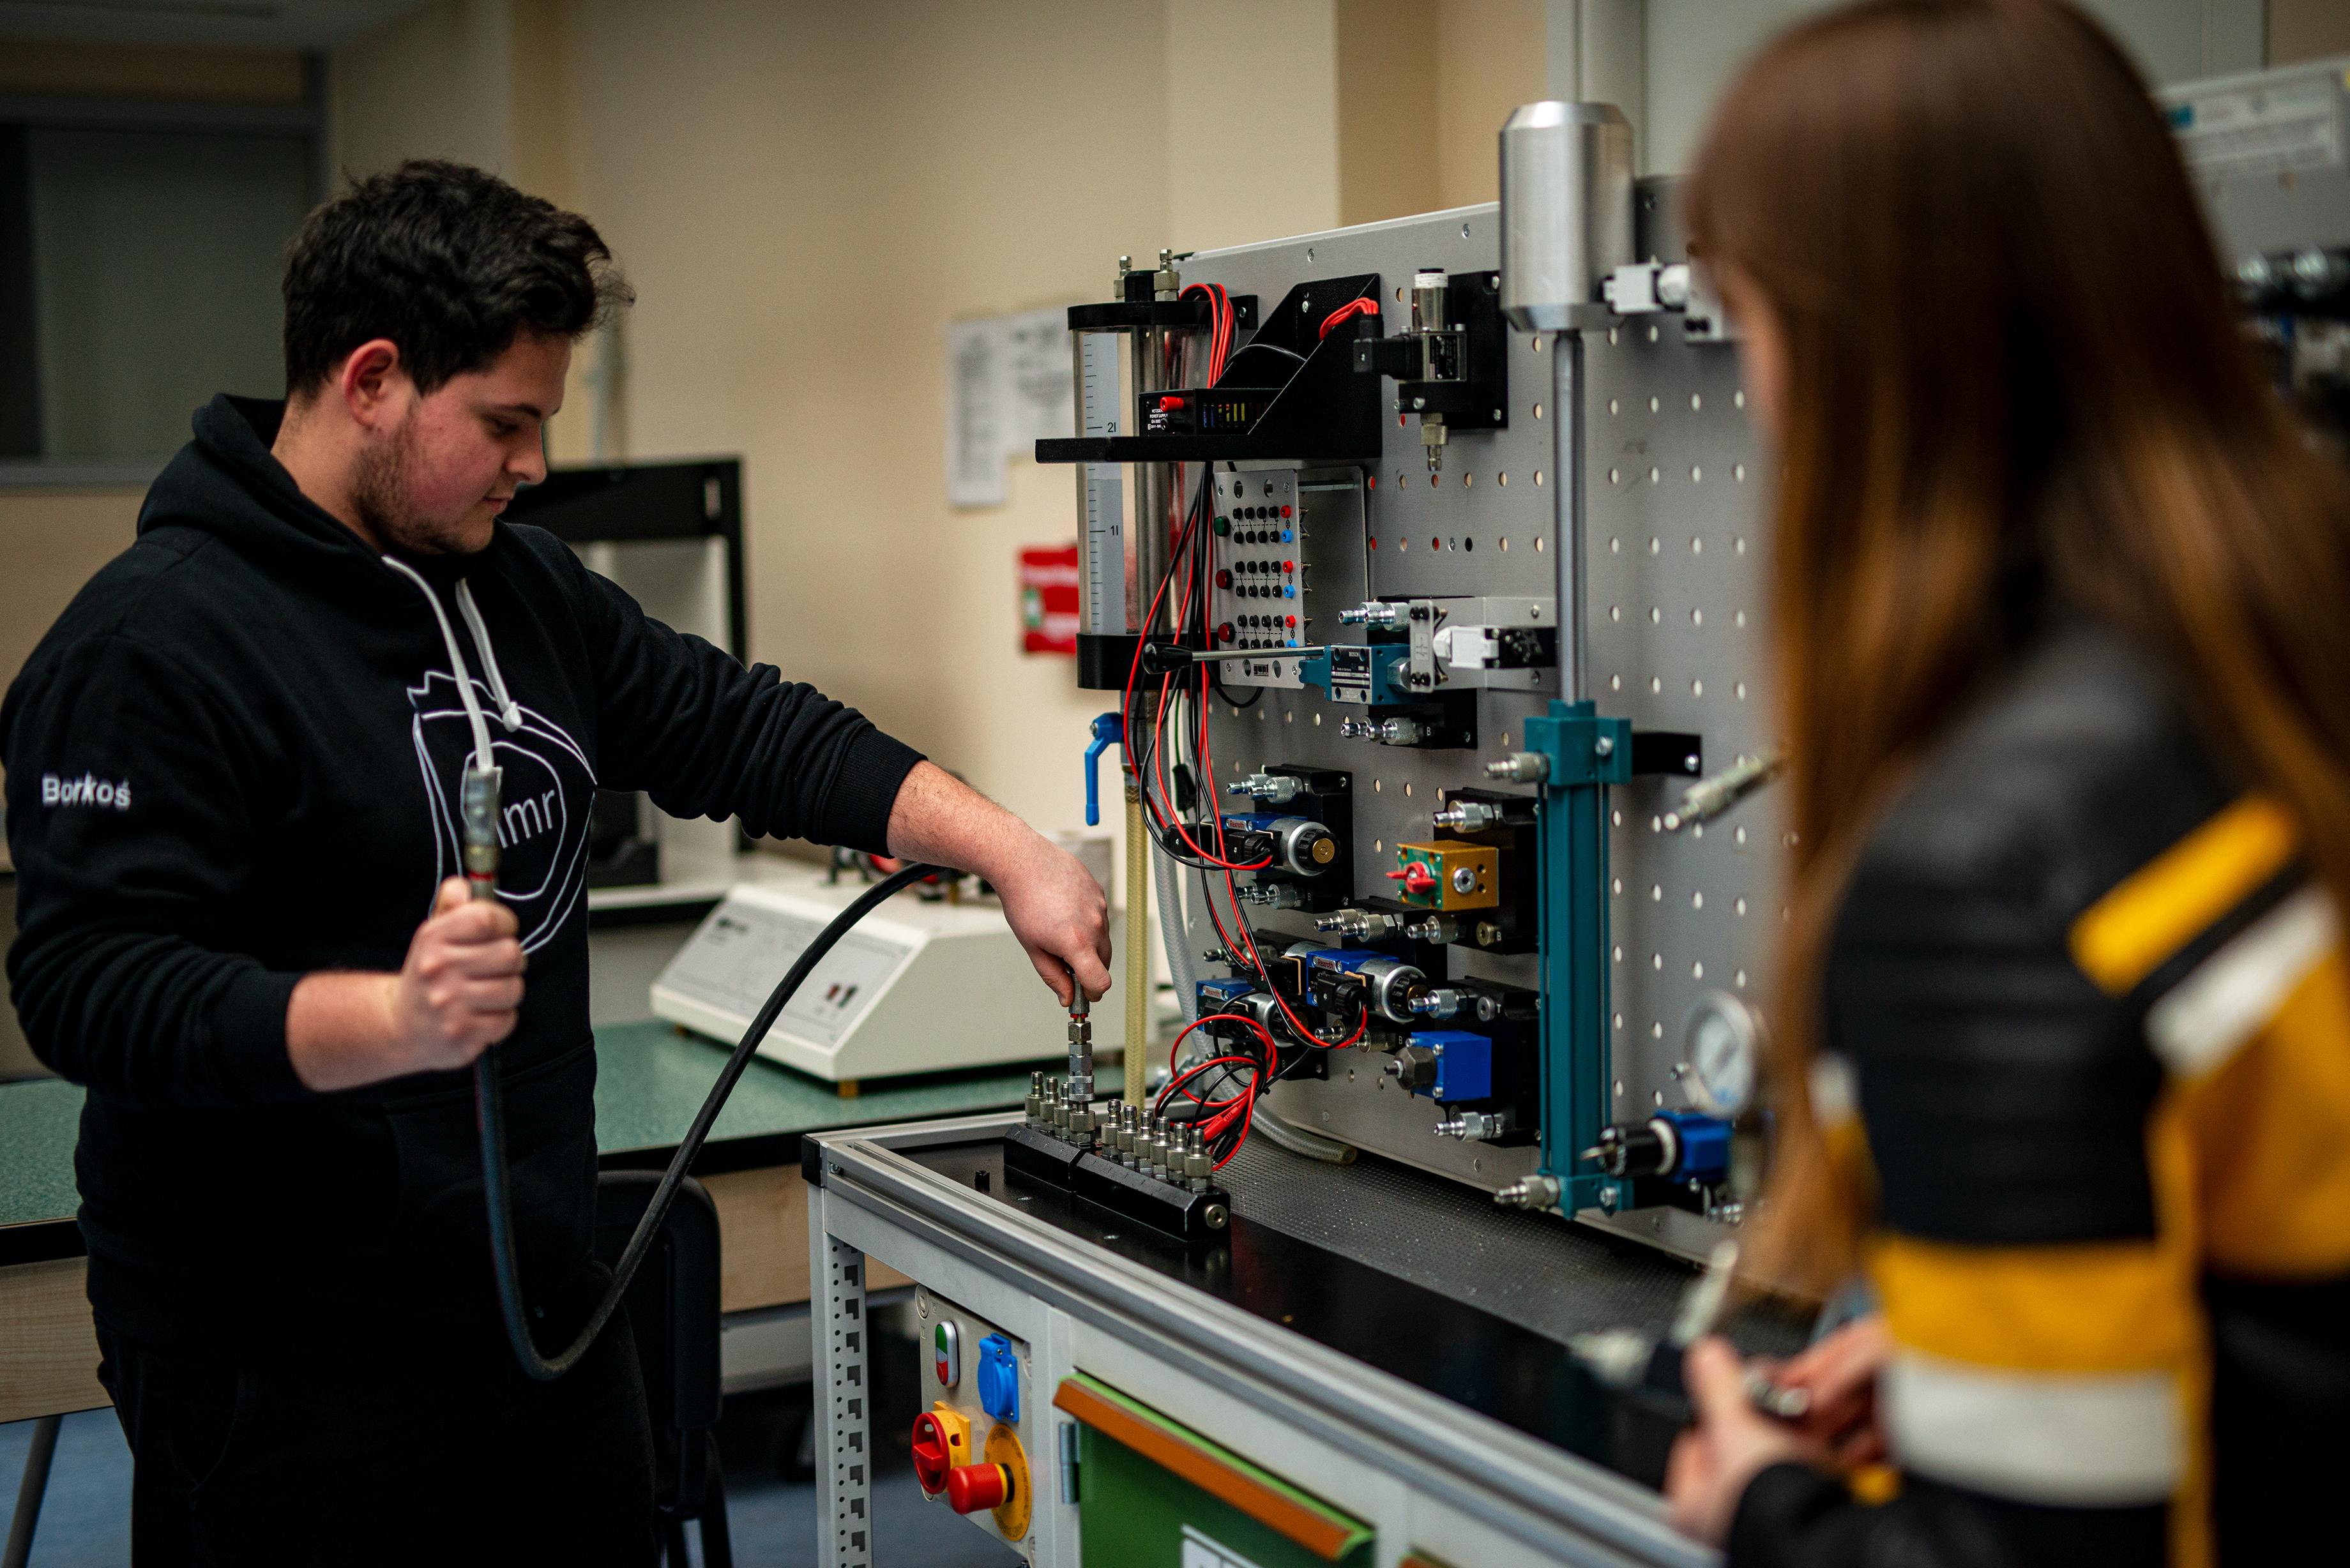 Student łączący przewody hydrauliczne na stanowisku laboratoryjnym.